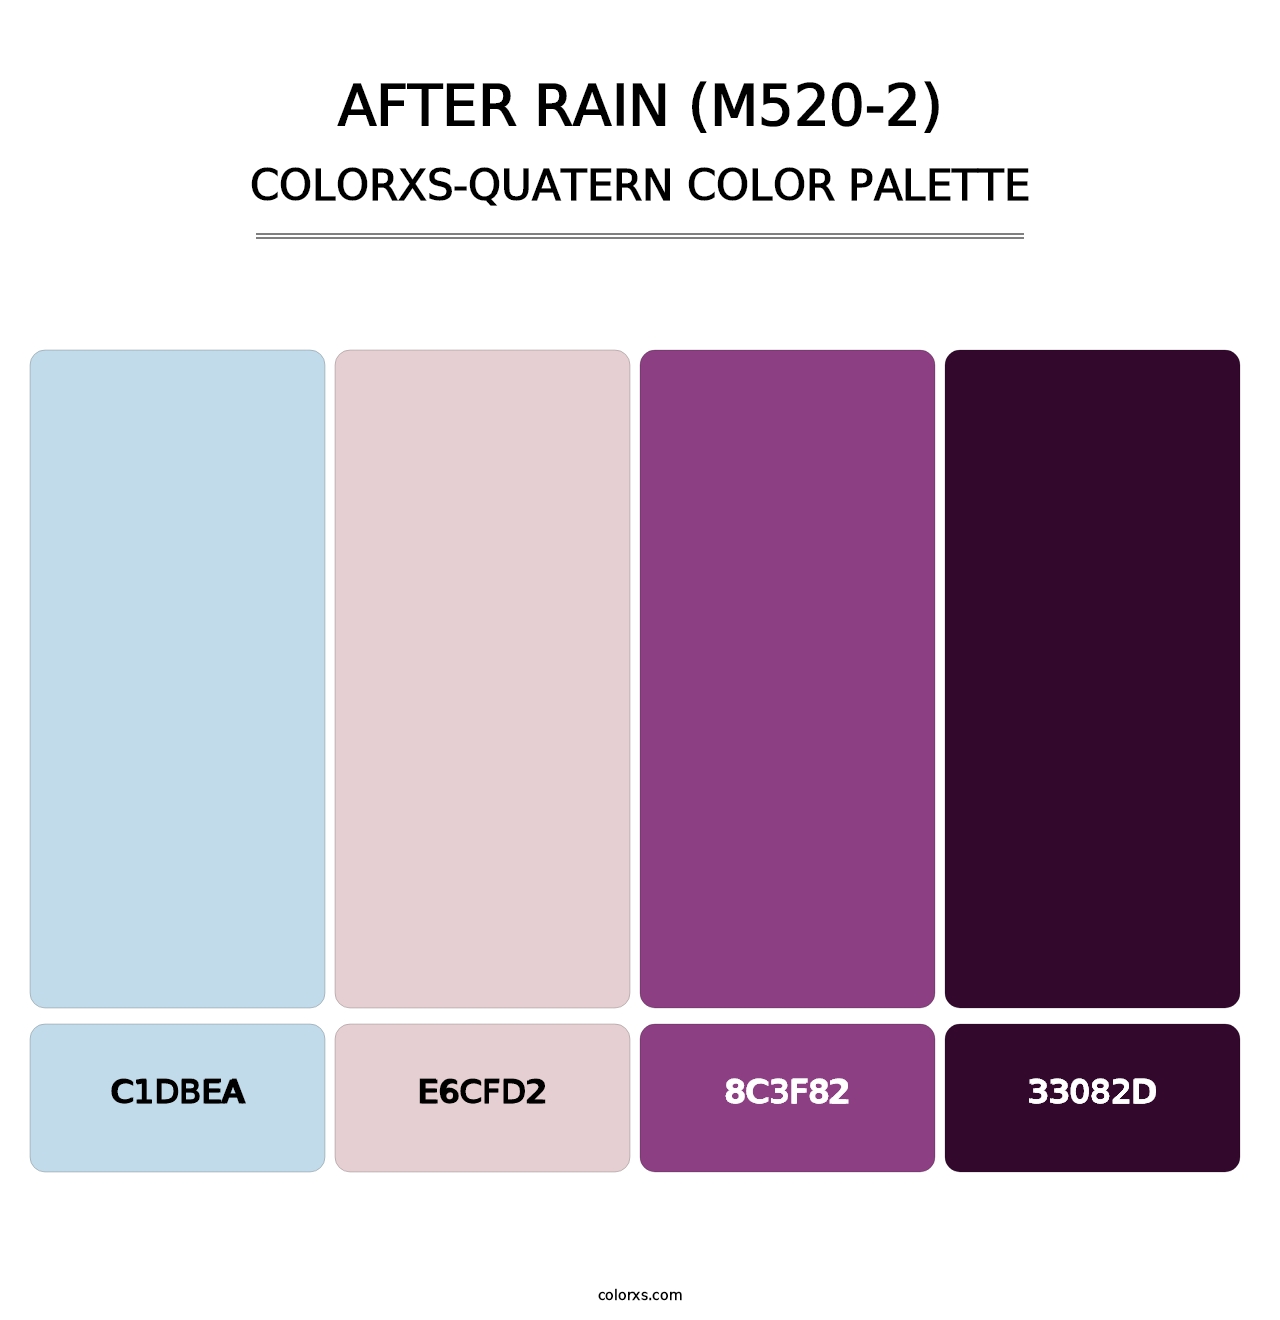 After Rain (M520-2) - Colorxs Quatern Palette